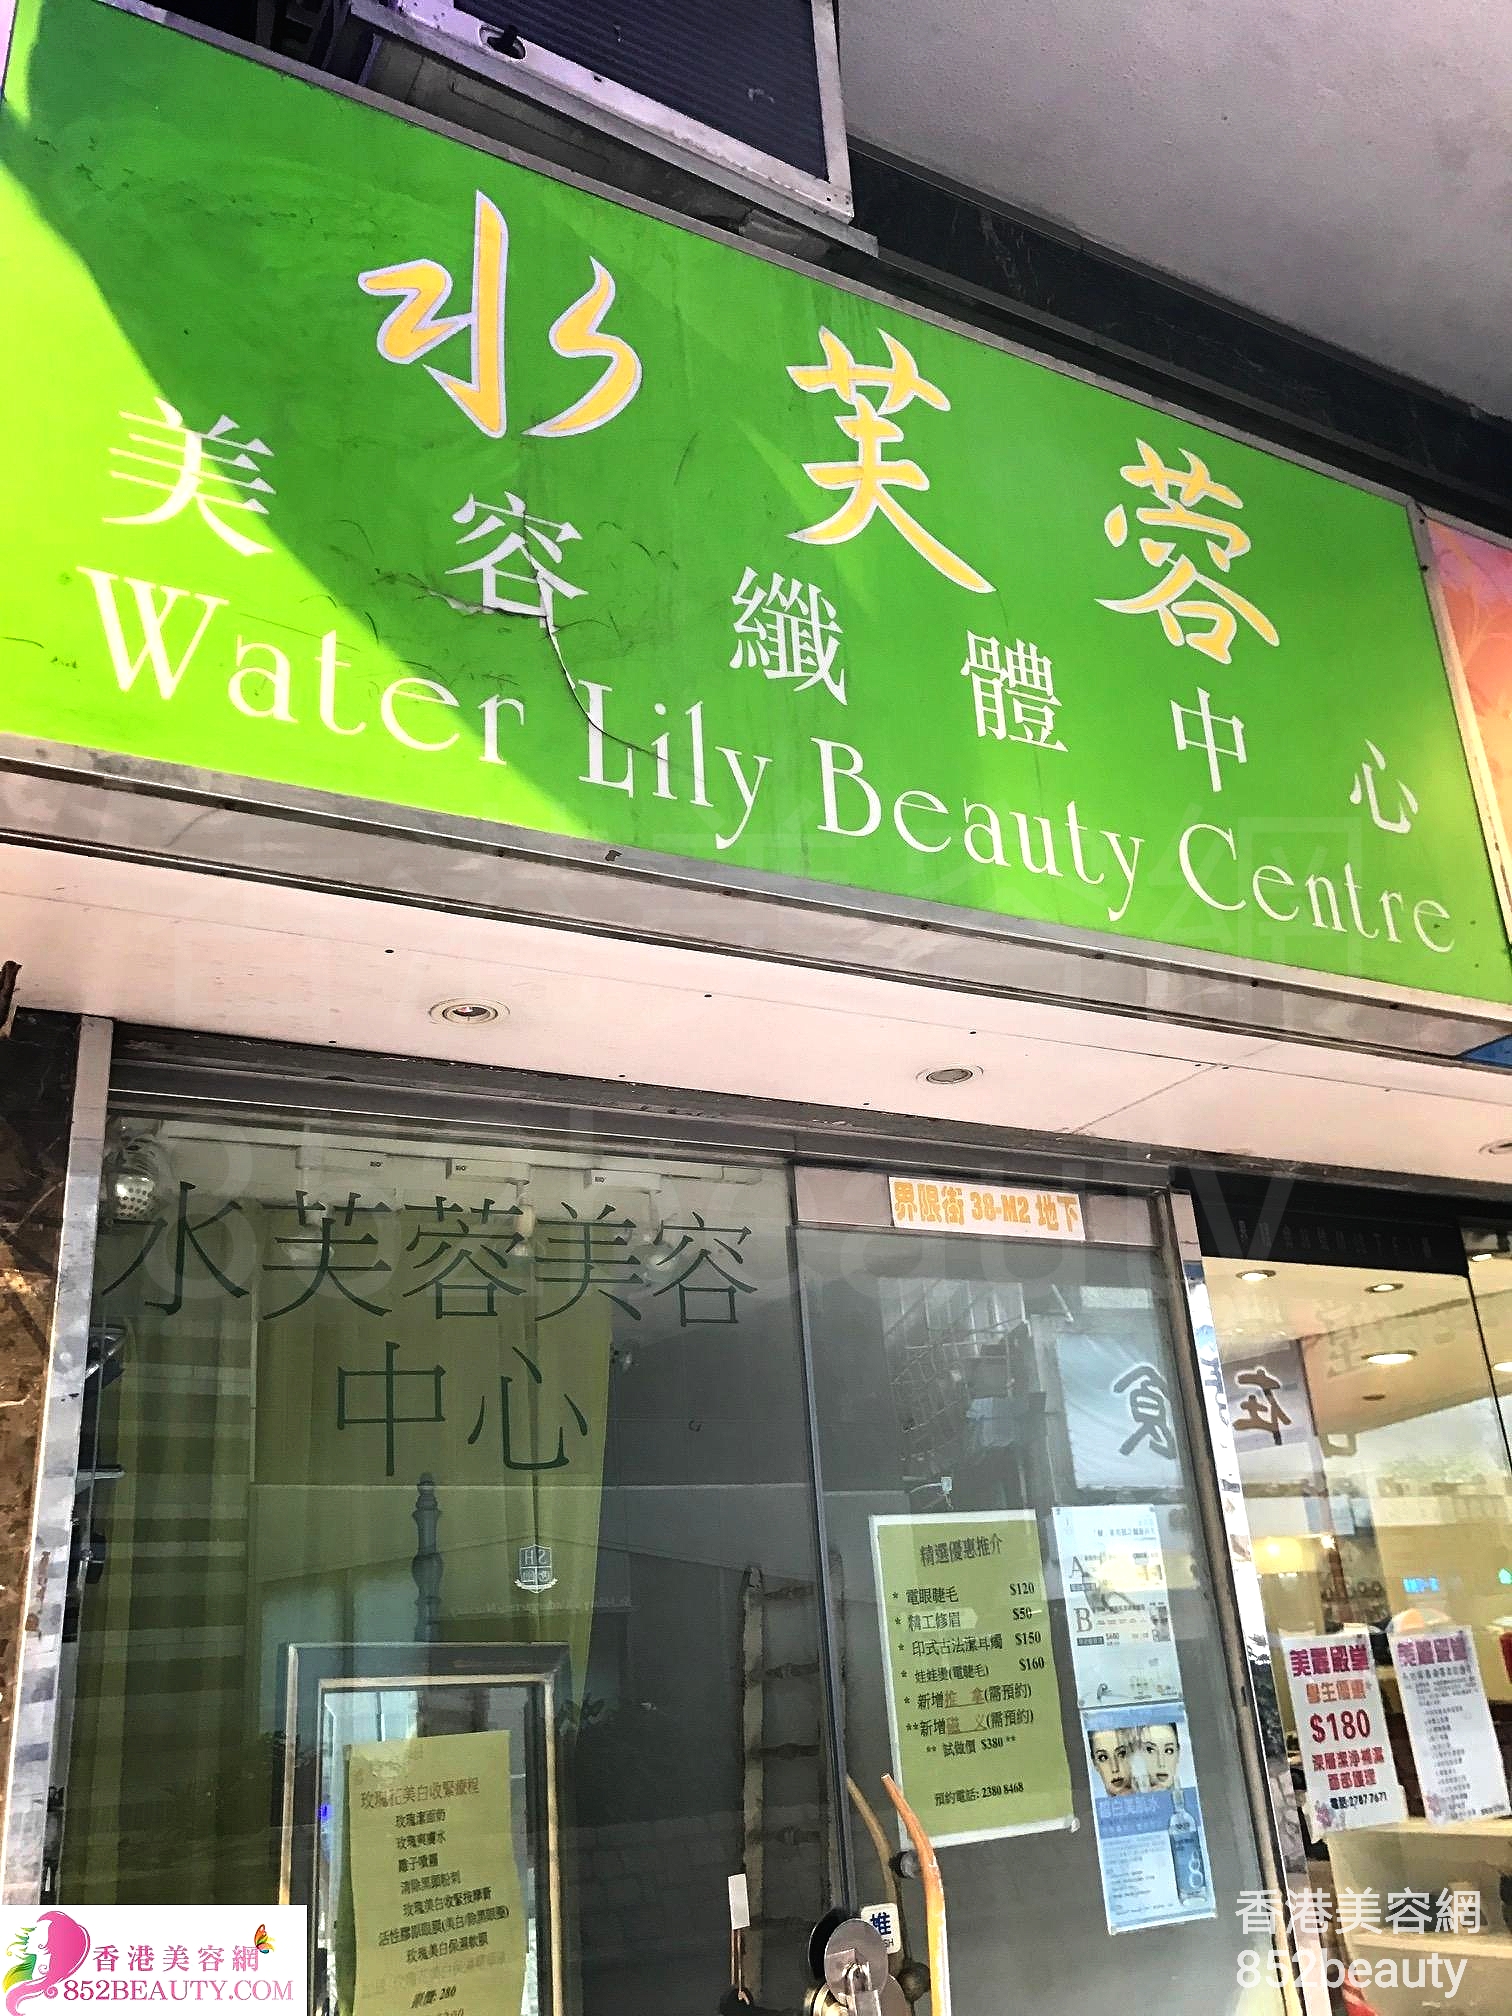 修眉/眼睫毛: 水芺蓉 美容纖體中心 Water Lily Beauty Centre